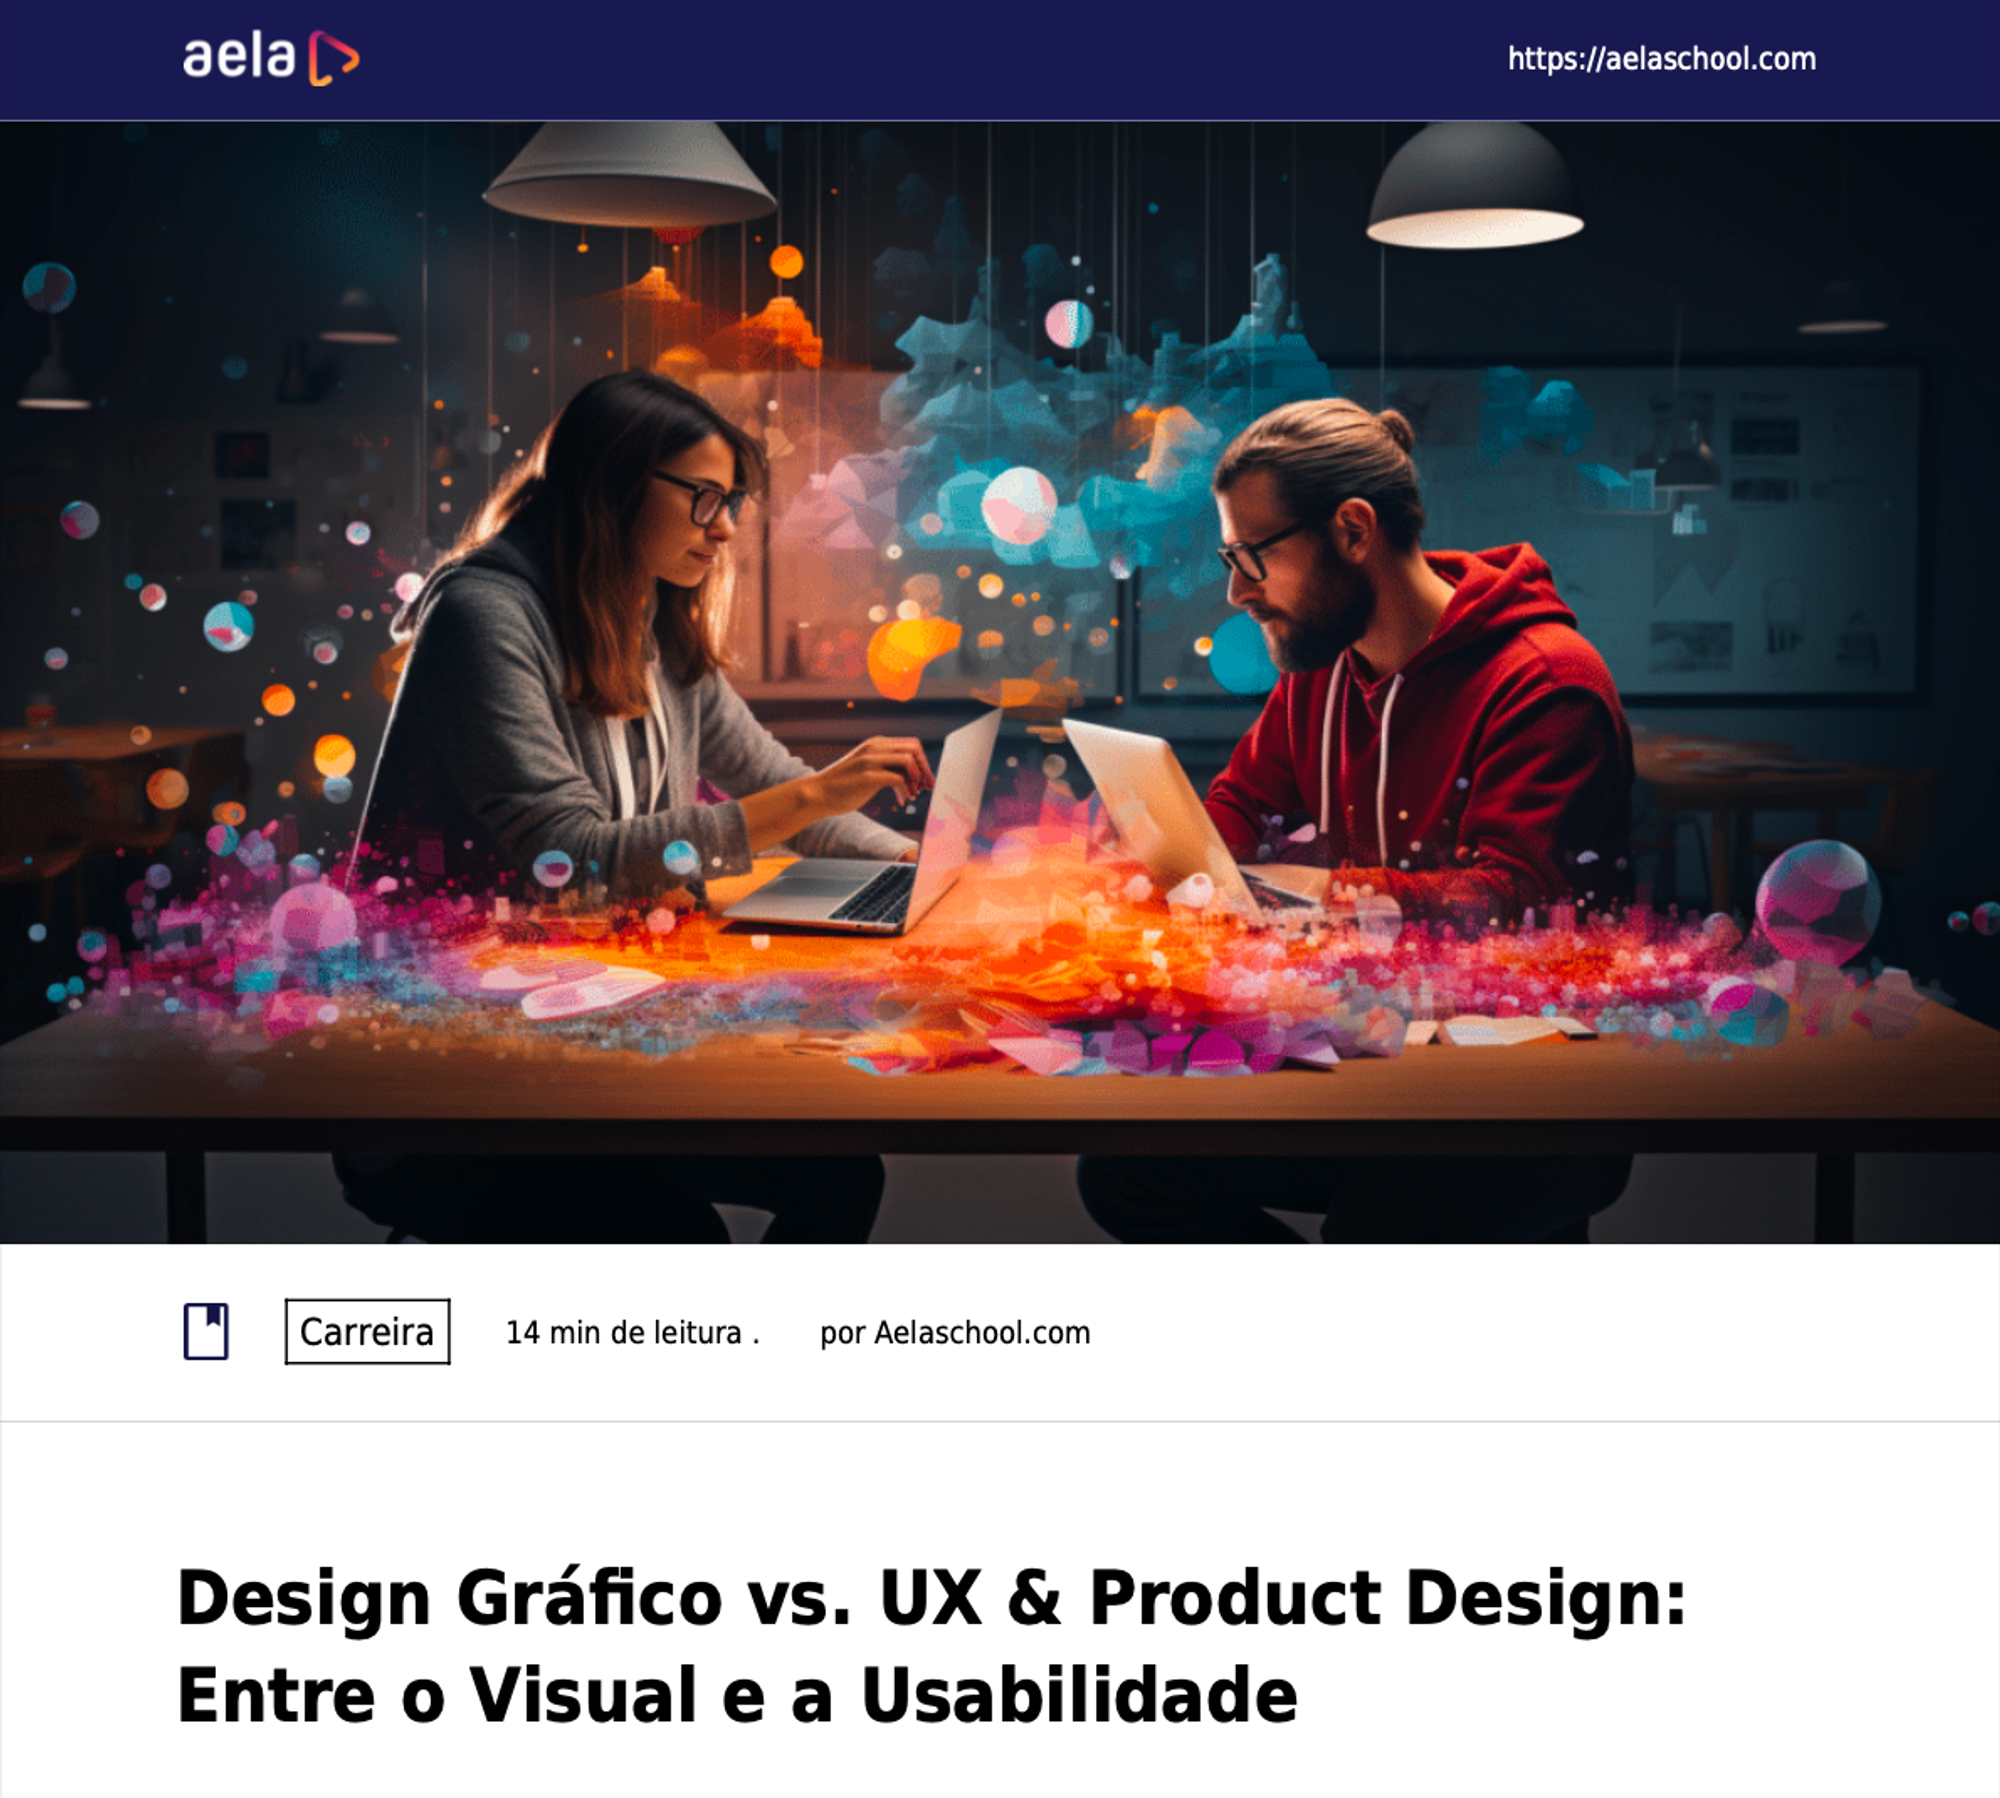 Design Gráfico vs. UX & Product Design - Entre o Visual e a Usabilidade